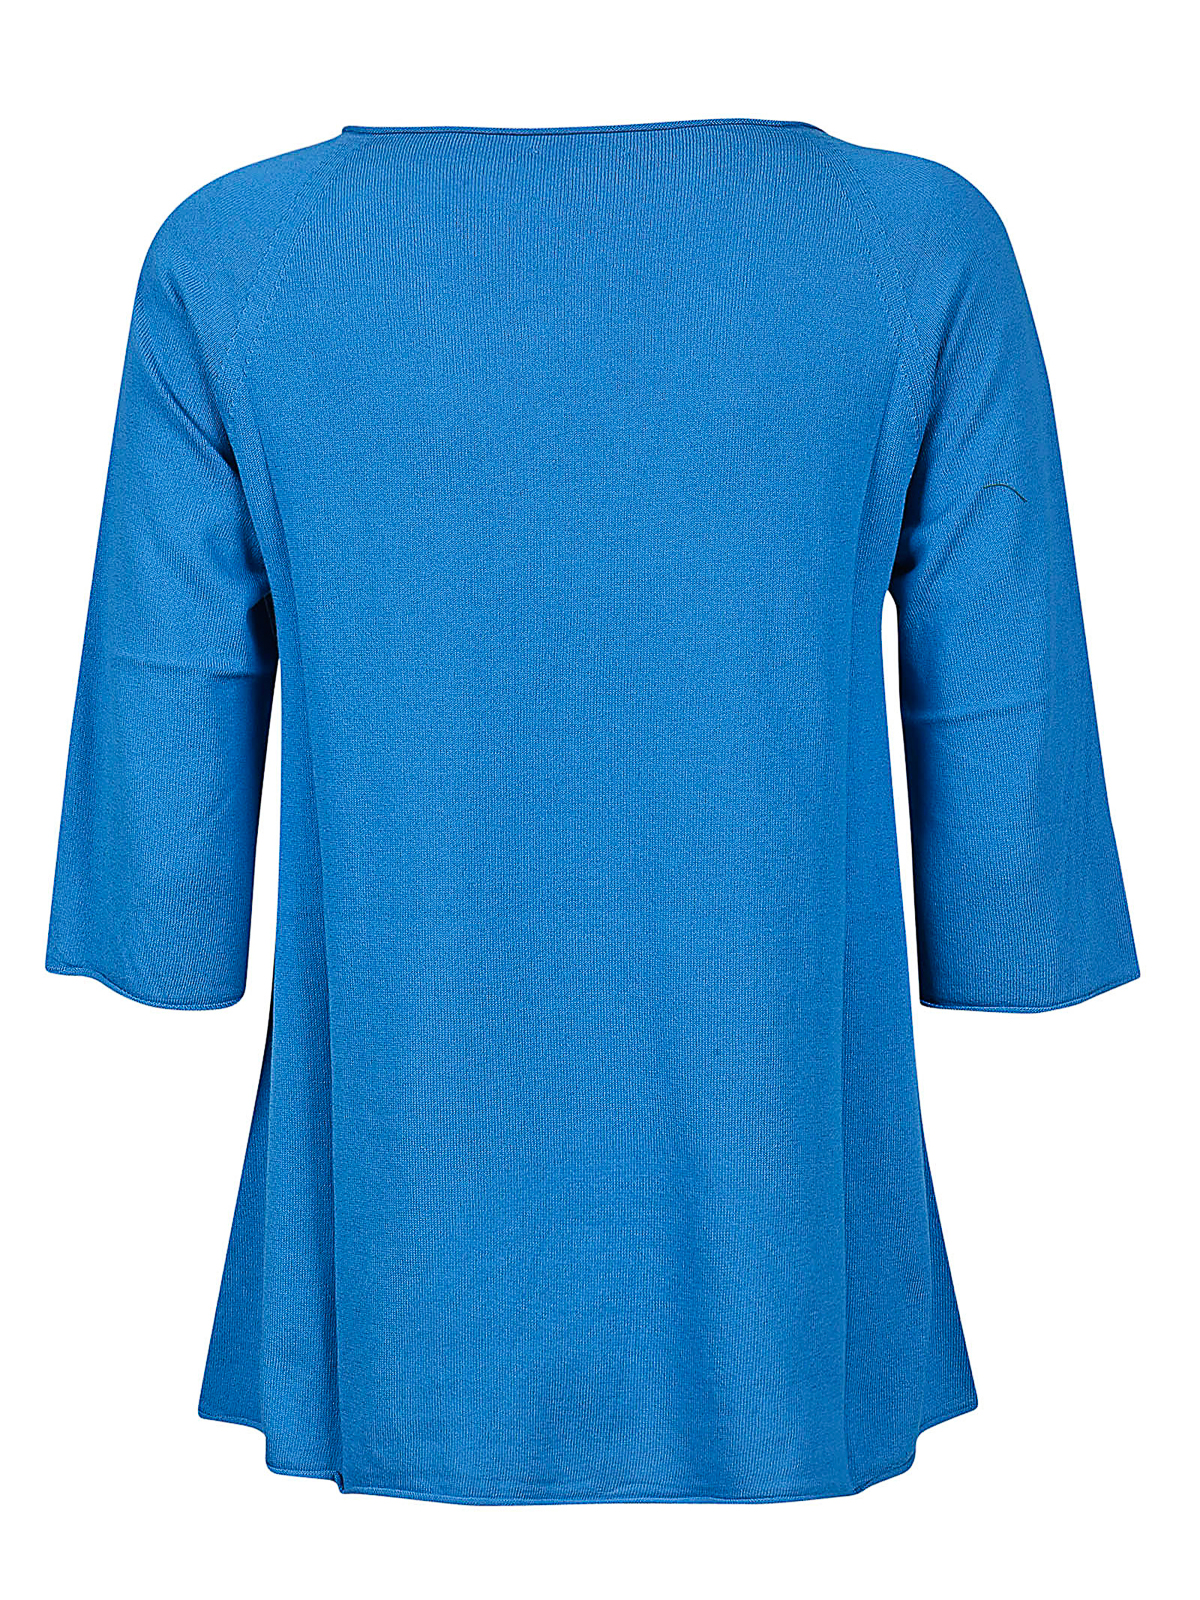 Shop Manipur Cashmere Suéter Cuello Redondo - Azul In Blue